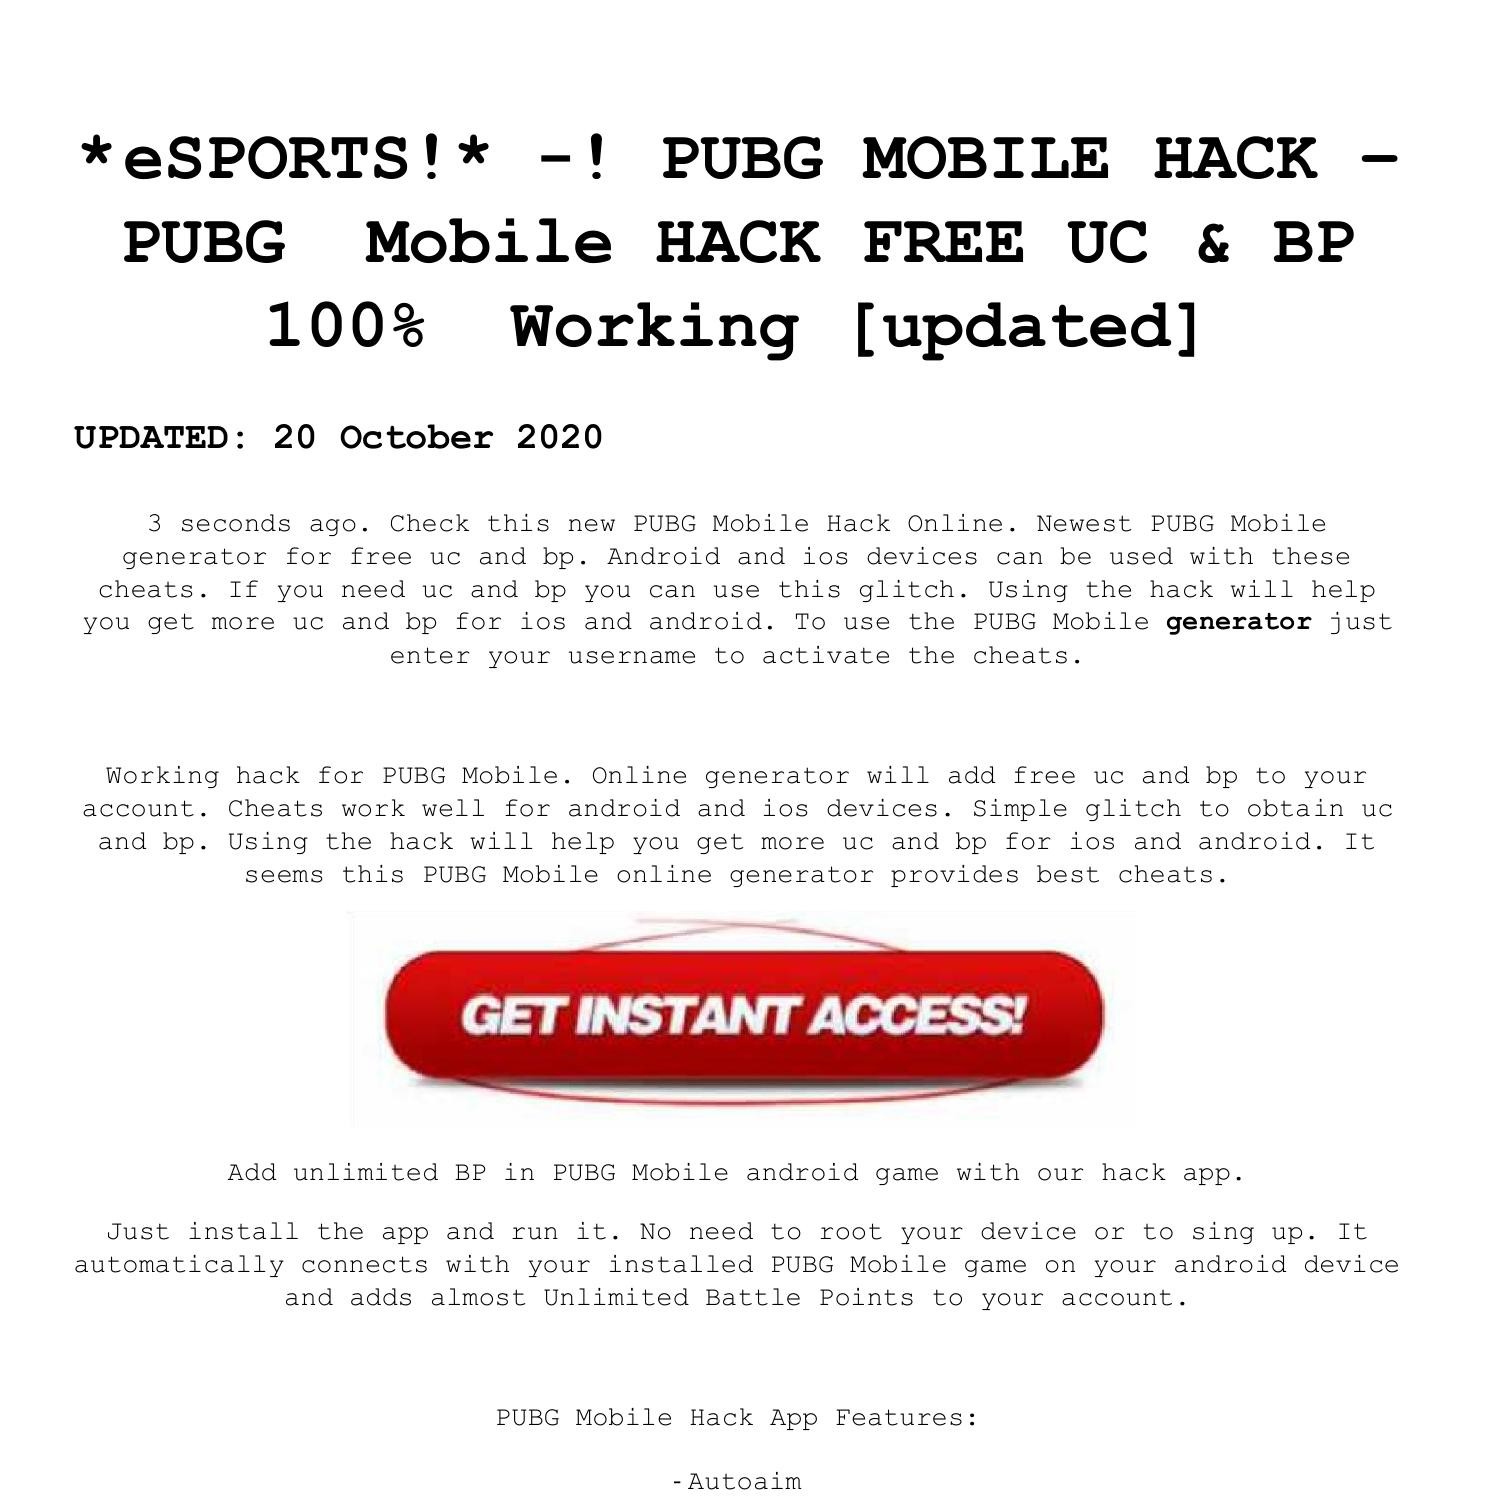 U S A Hacks Active Pubg Mobile Free Uc Hack Pdf Docdroid